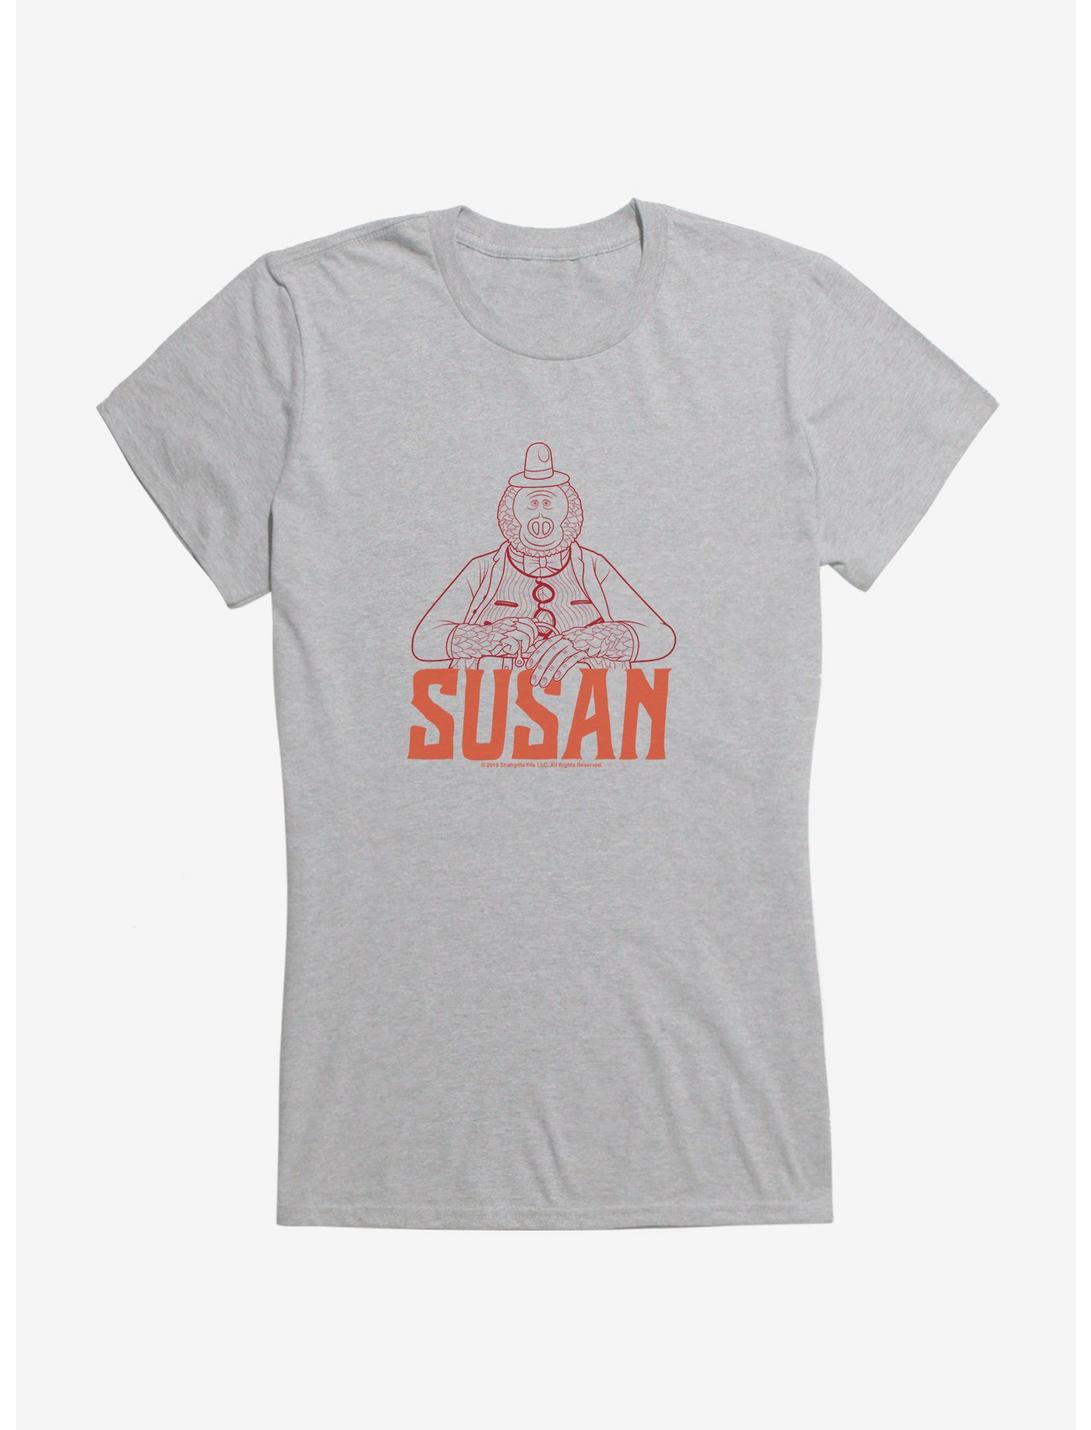 Missing Link Susan Girls T-Shirt, HEATHER, hi-res